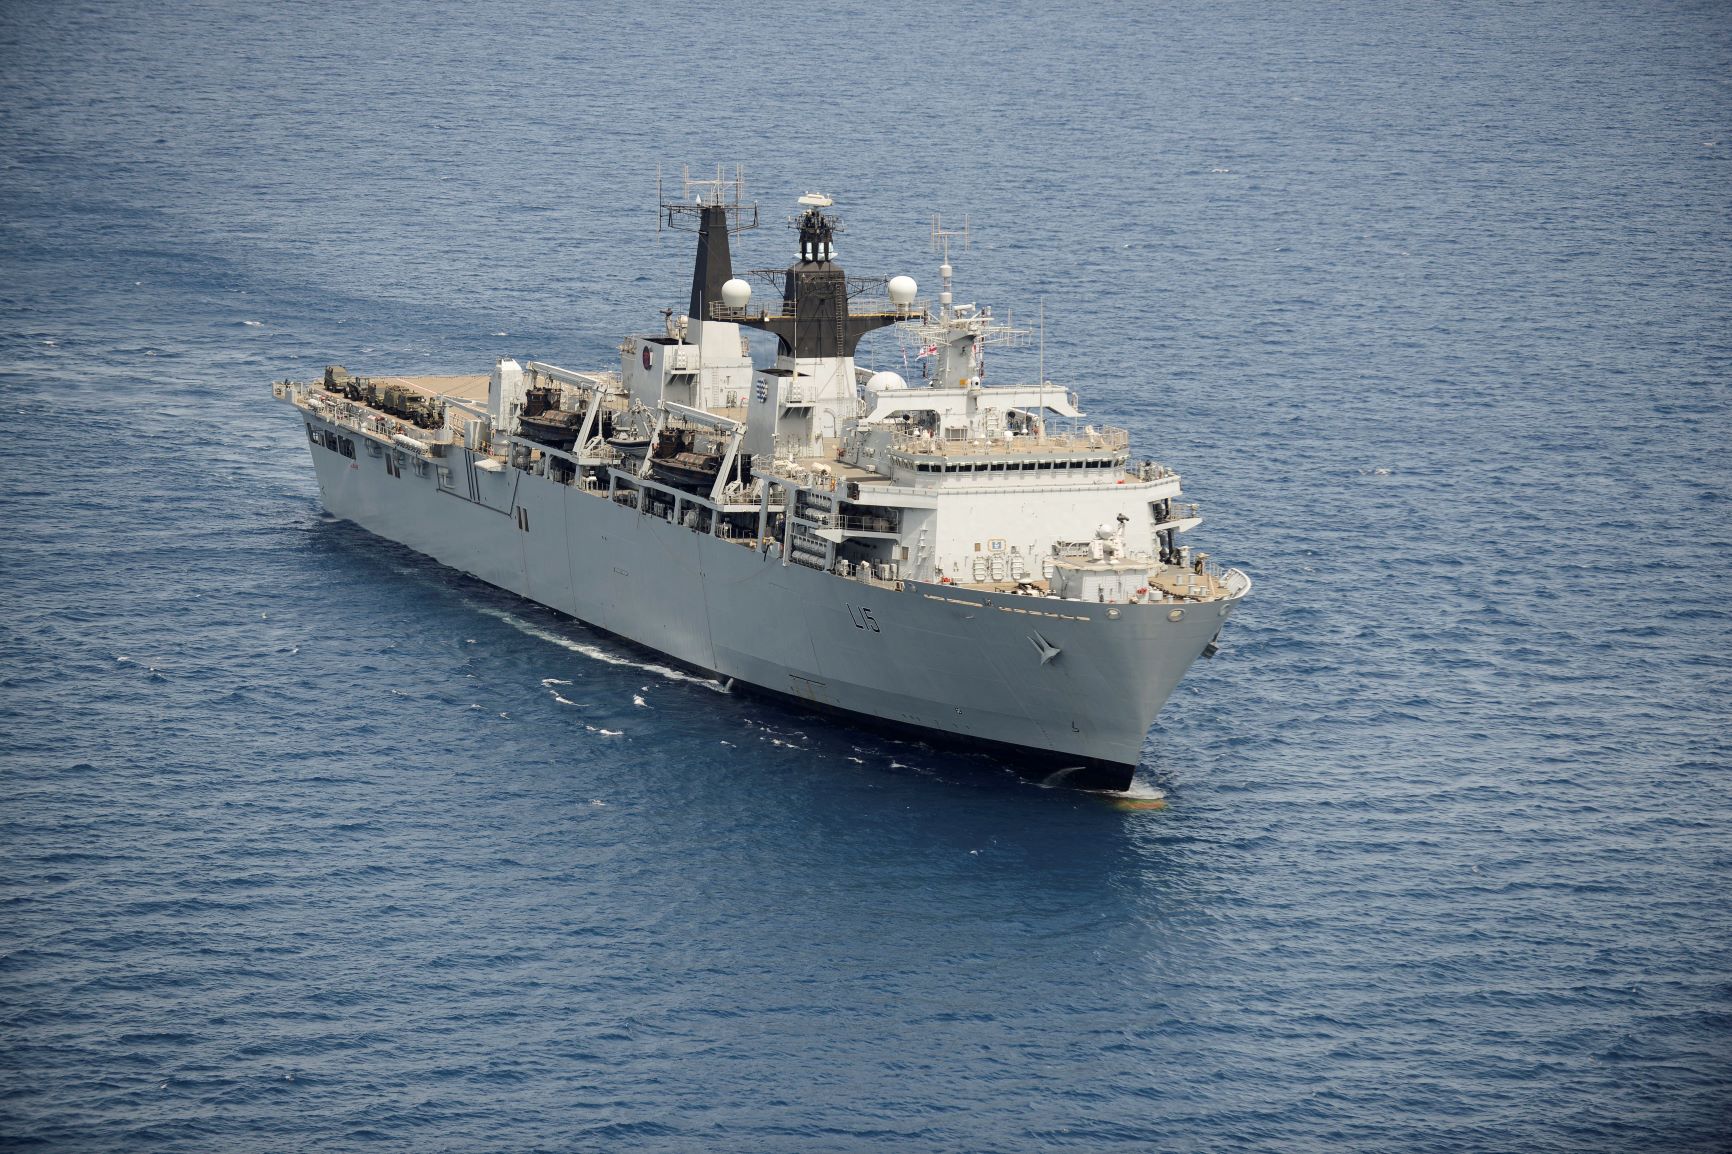 HMS Bulwark at sea